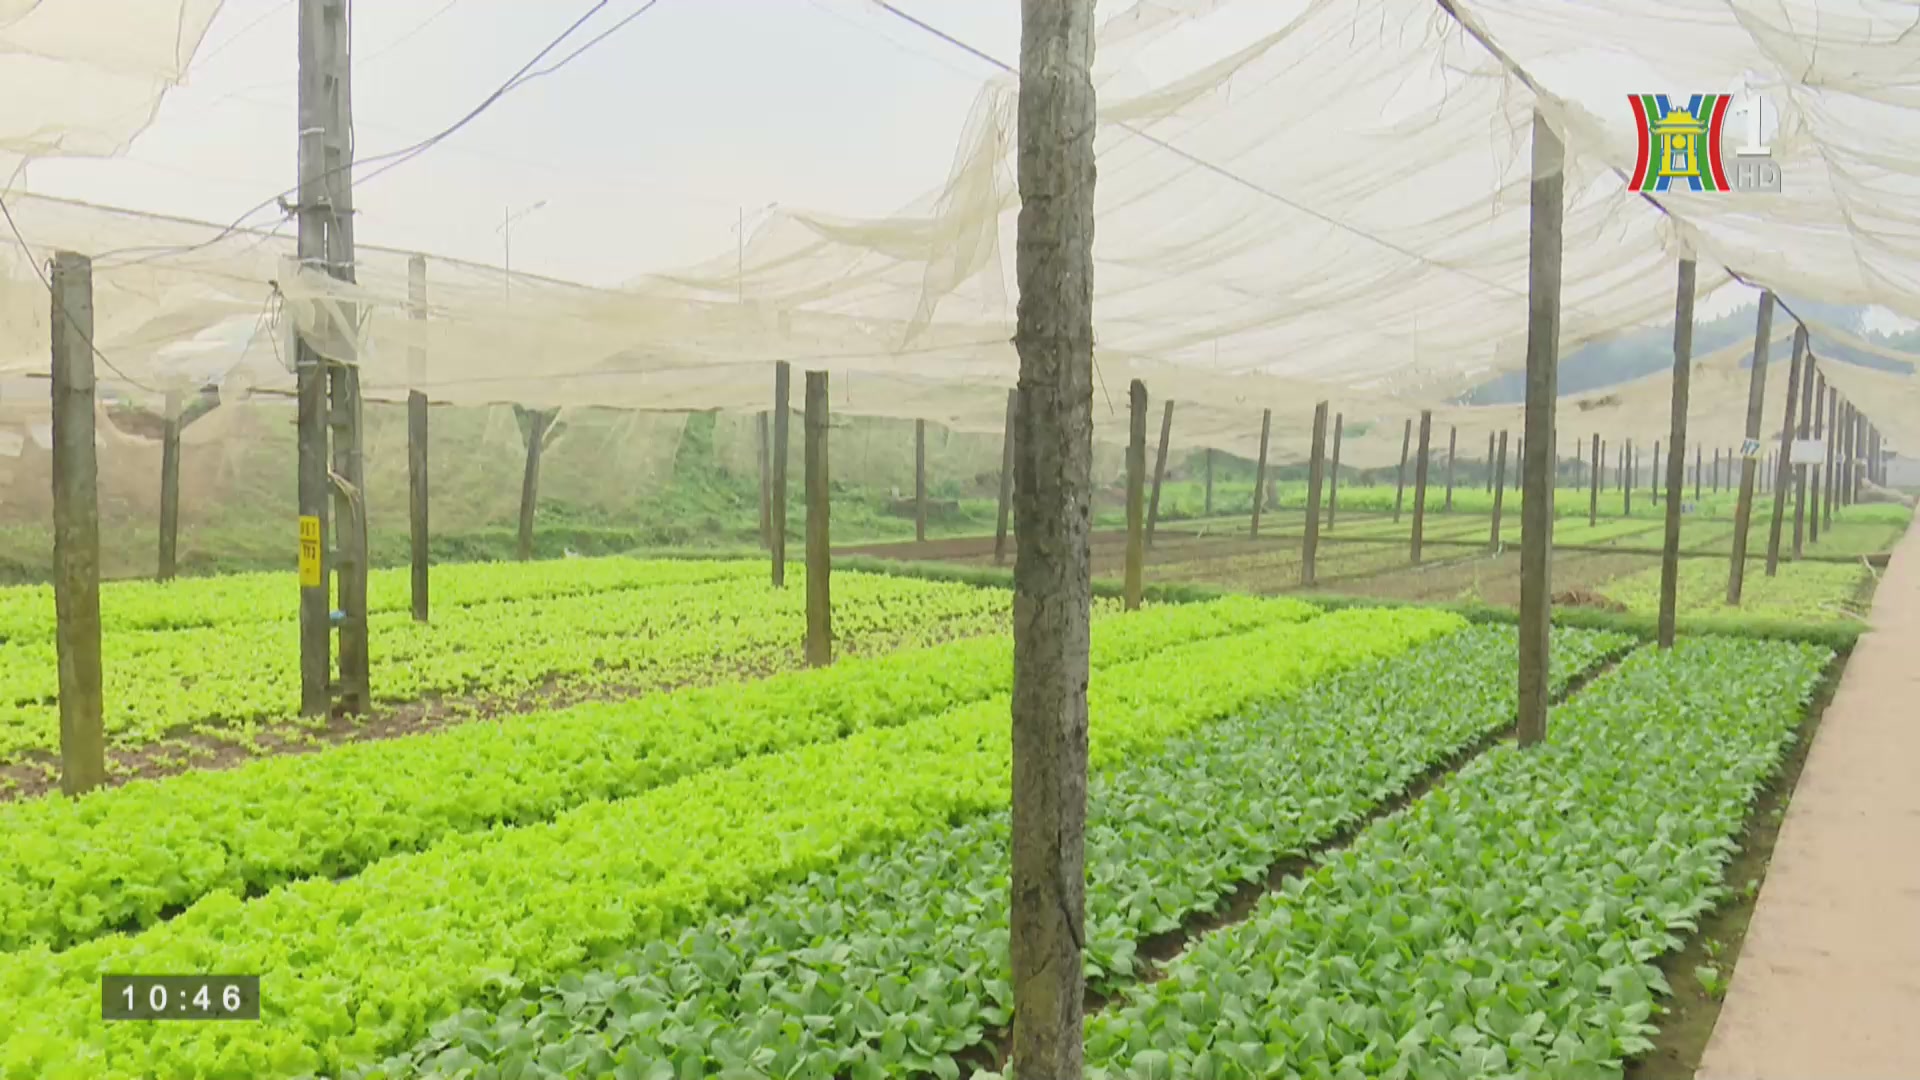 Quản lý chất lượng an toàn thực phẩm: Mô hình trang trại nông nghiệp sinh thái